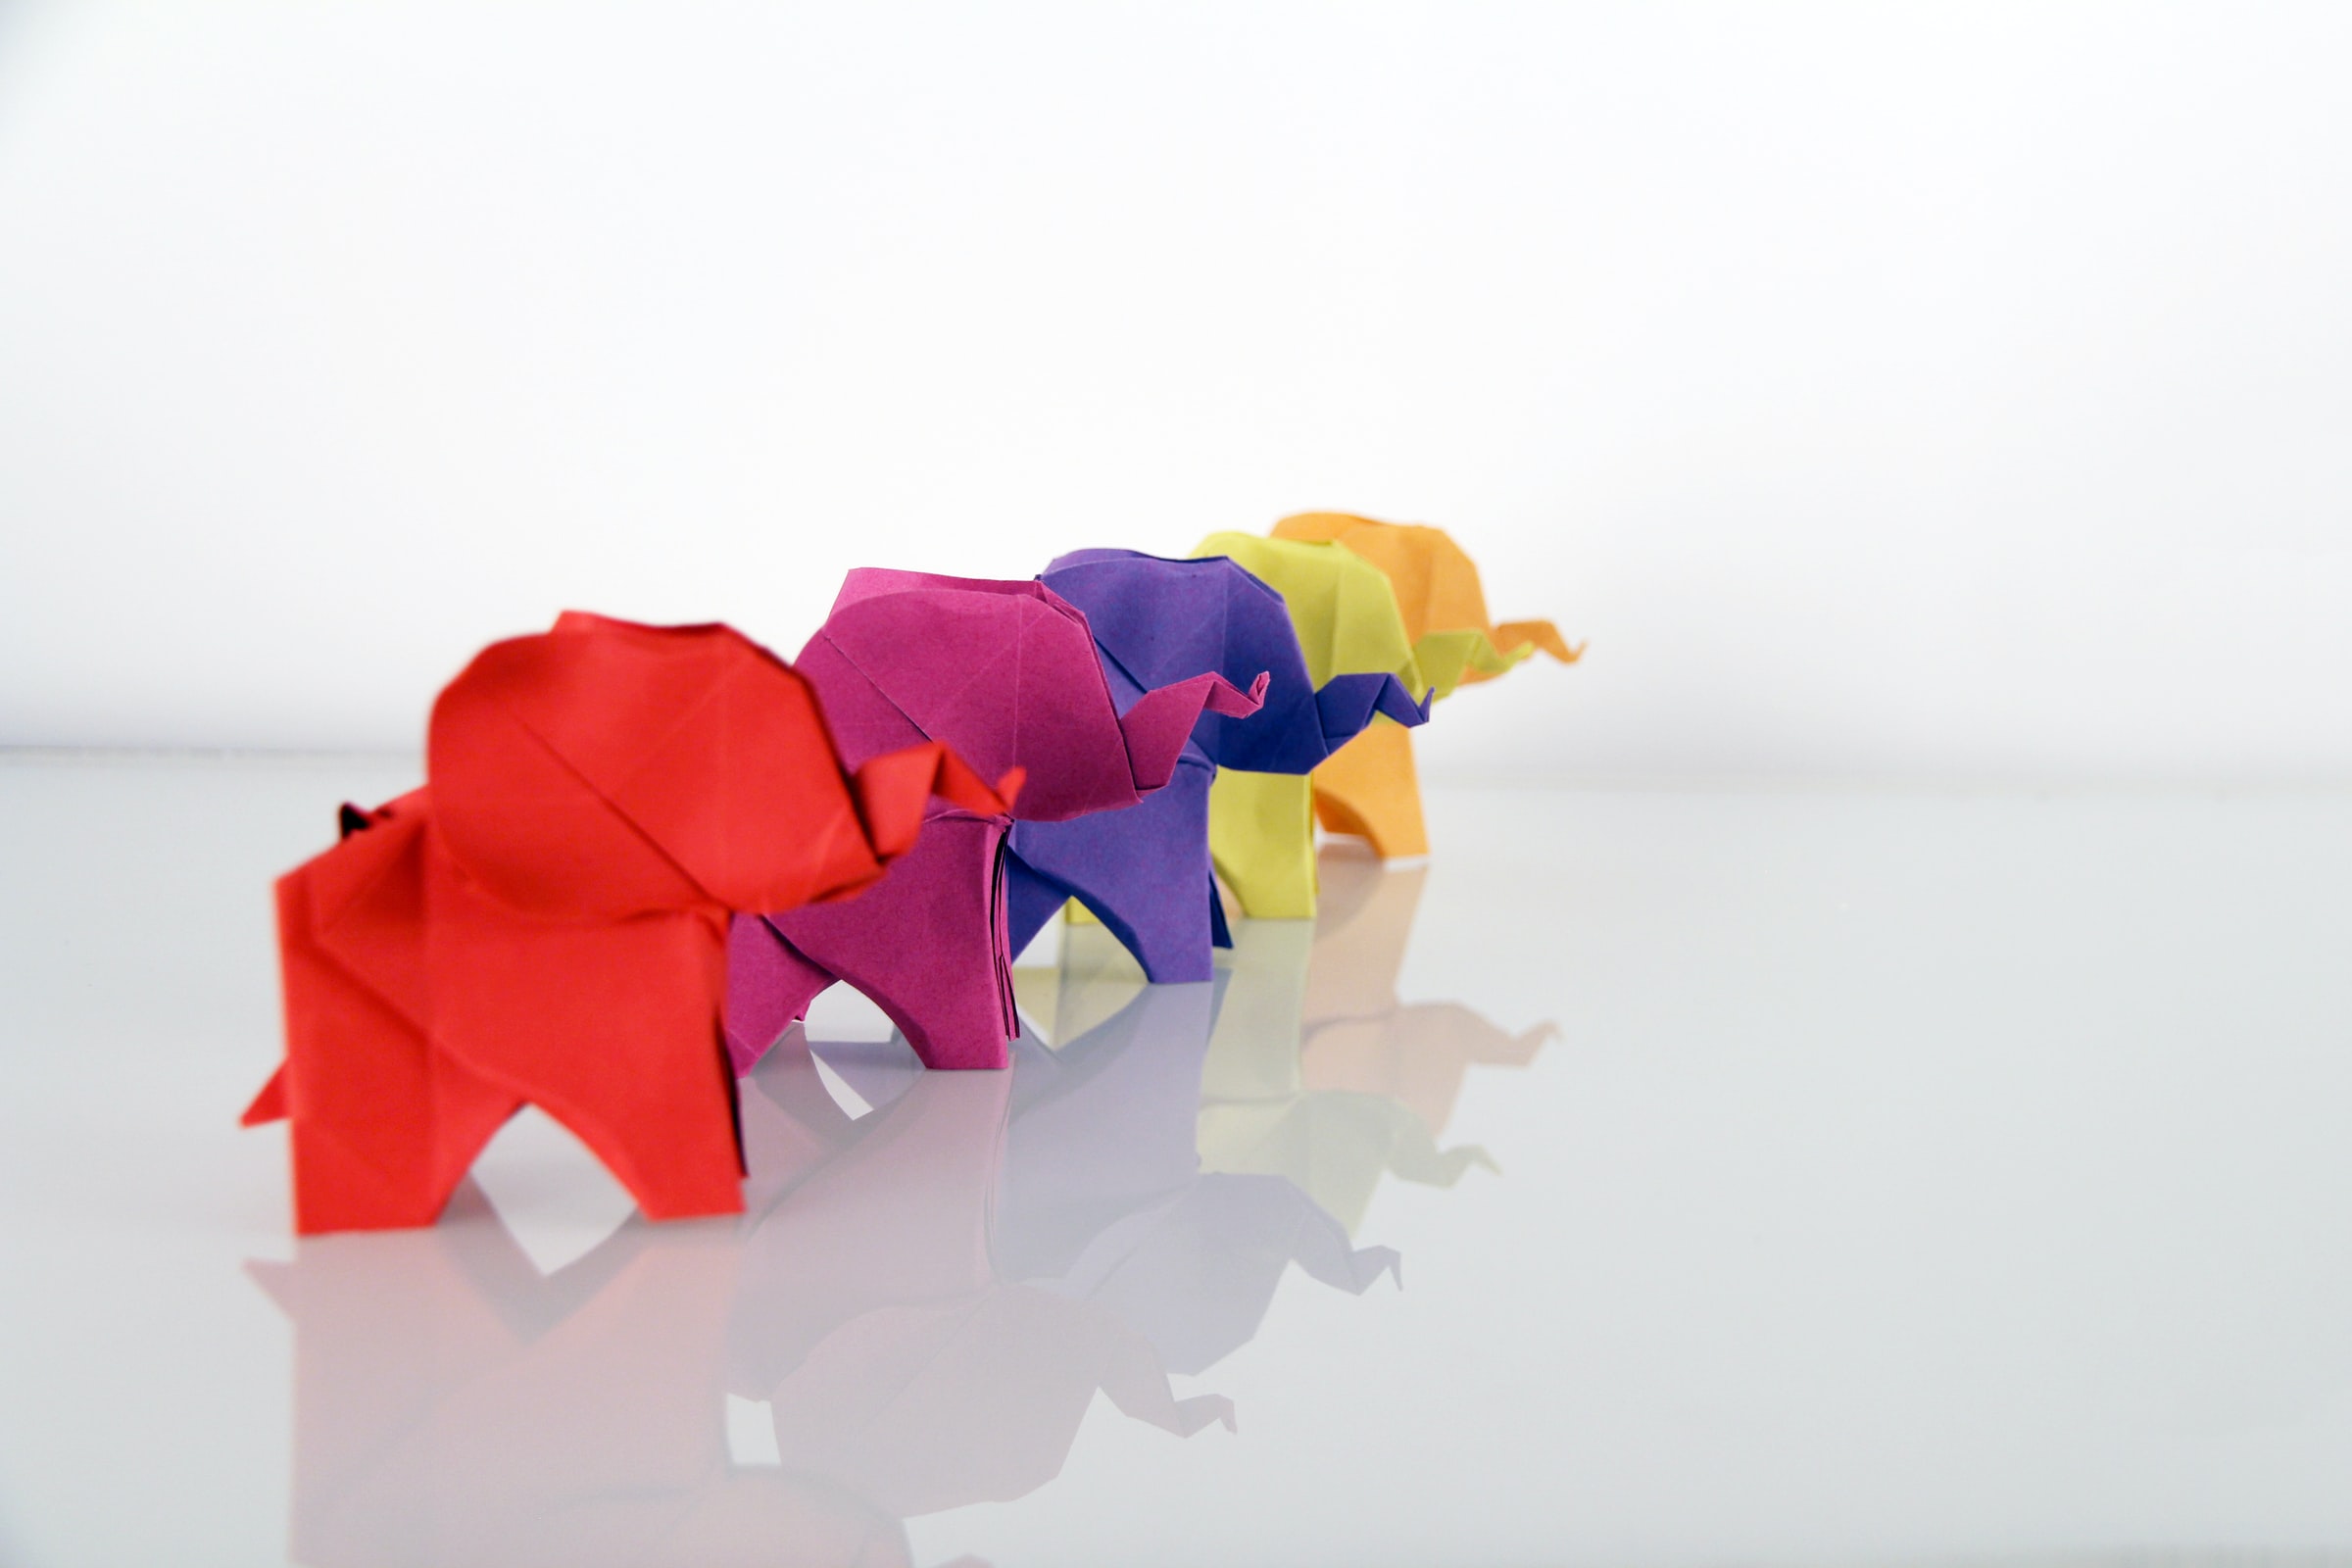 Fotografia di origami di animali colorati